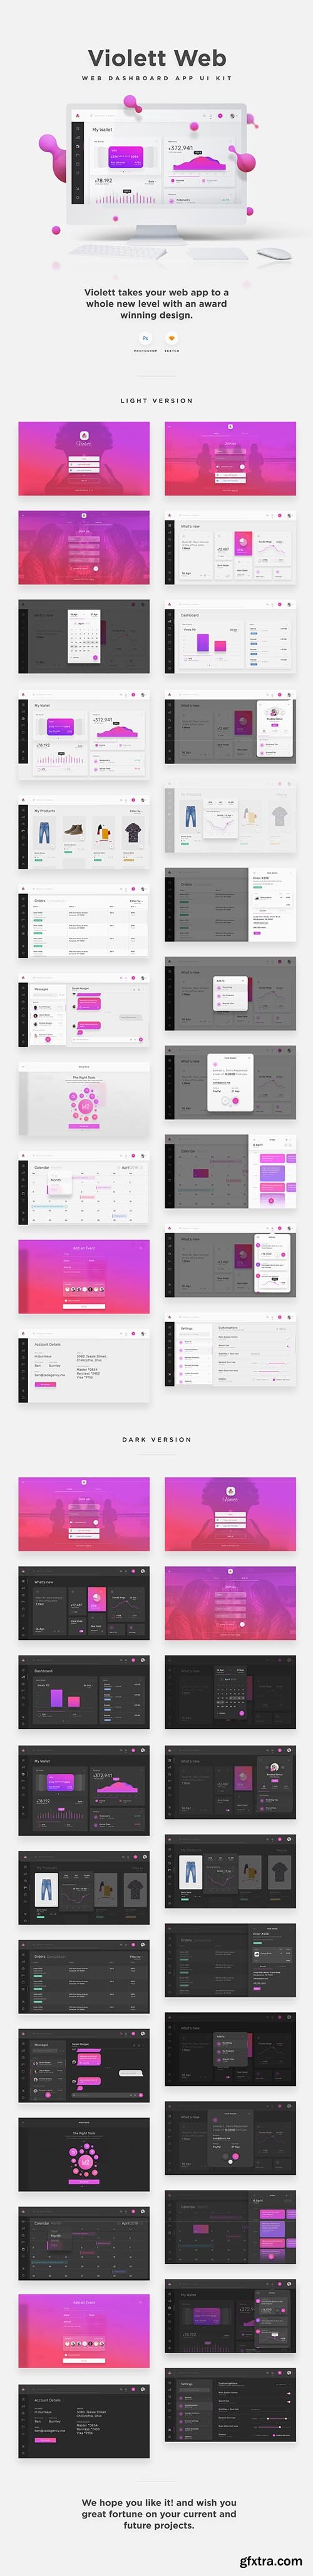 Violett Web UI Kit